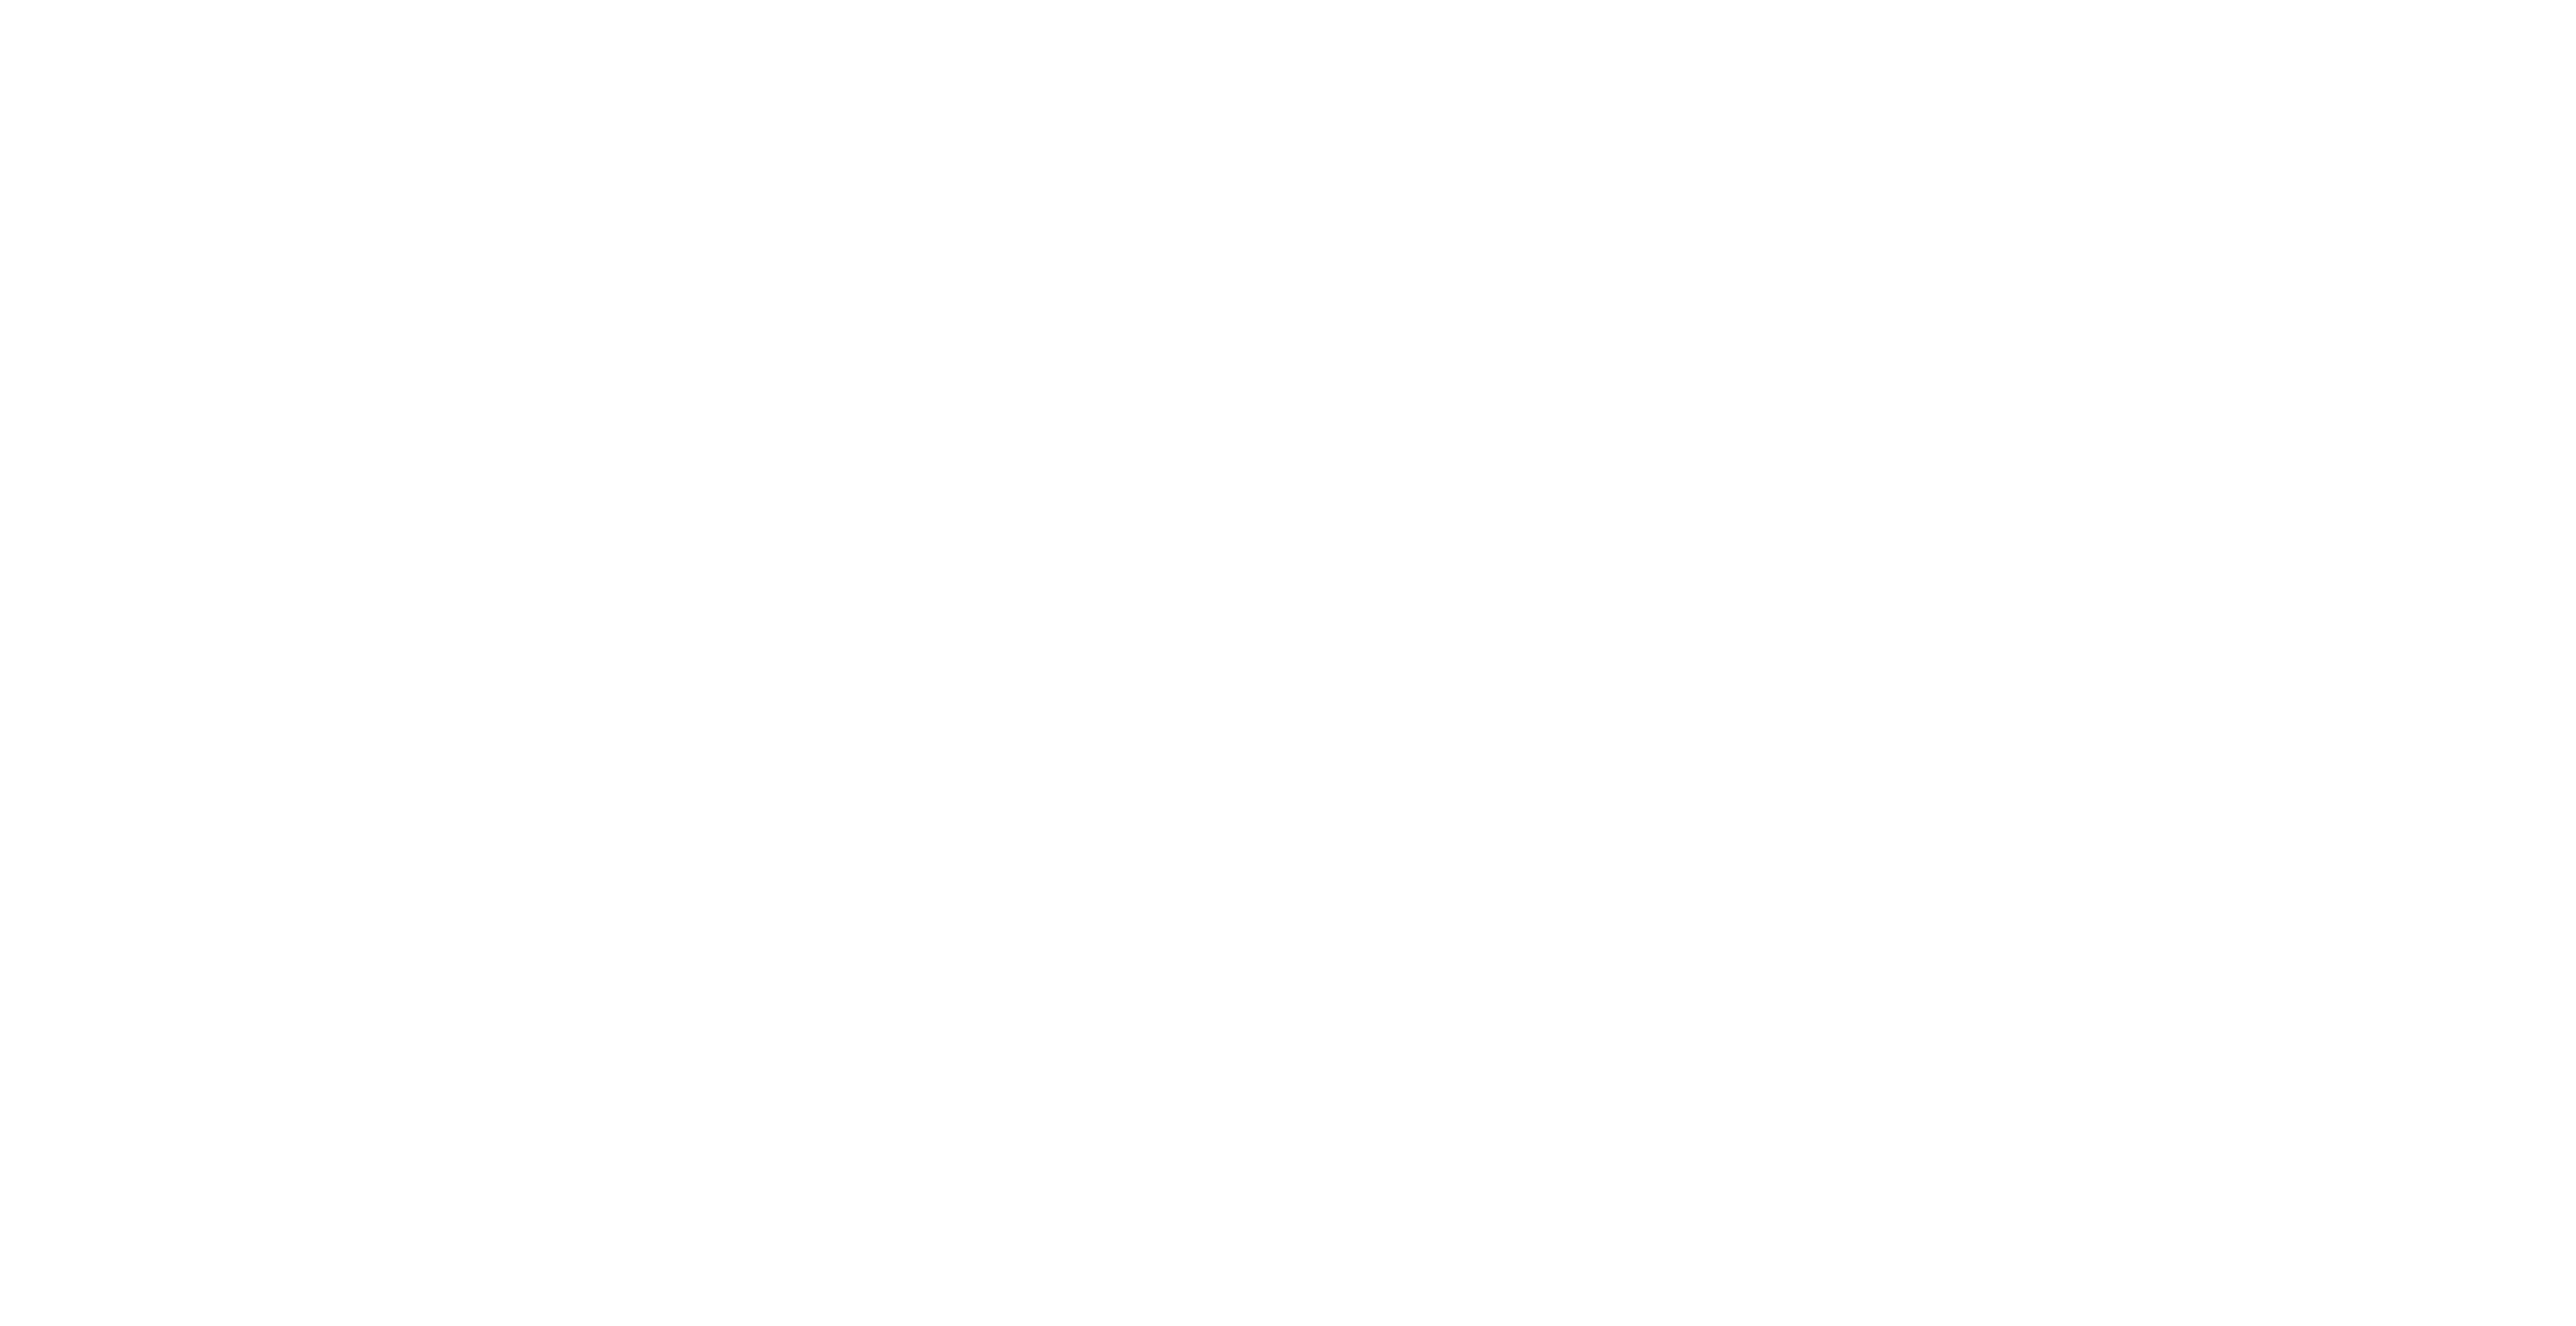 GotMountains